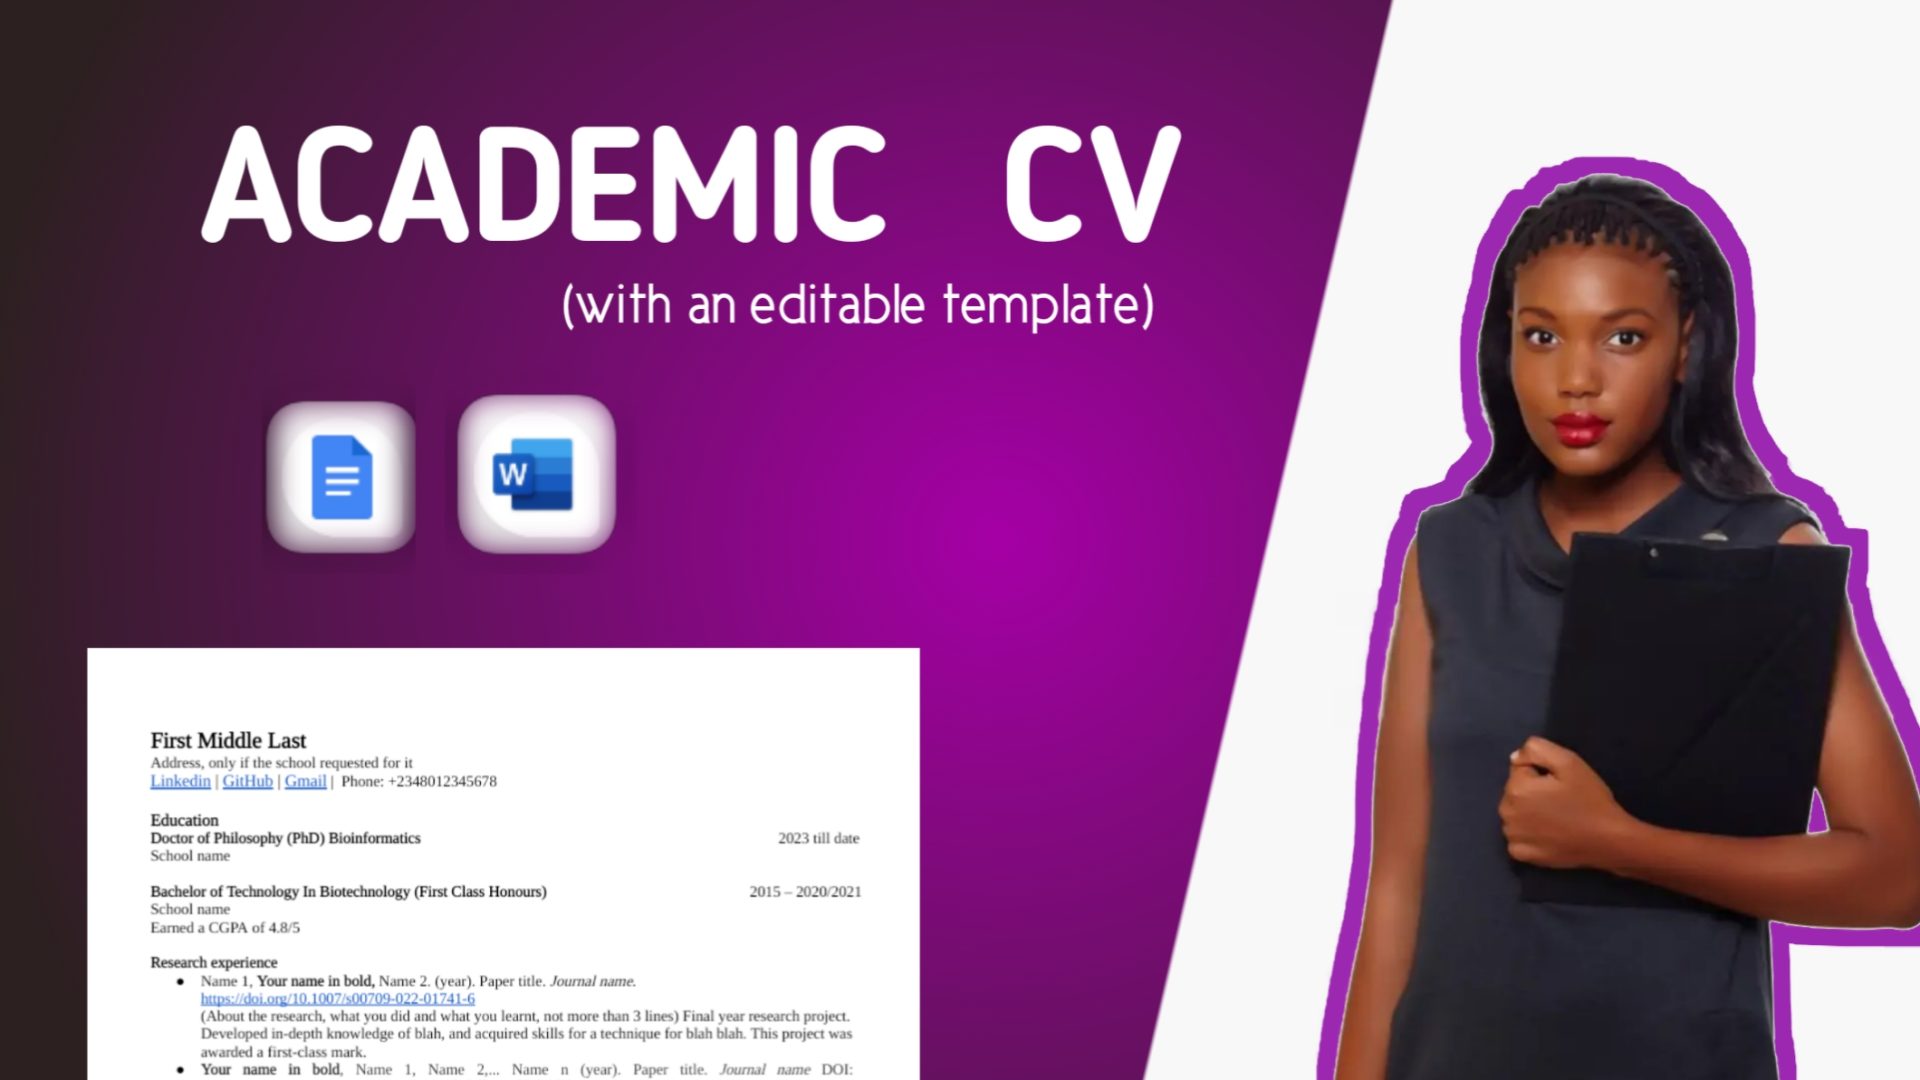 Academic CV with an editable format